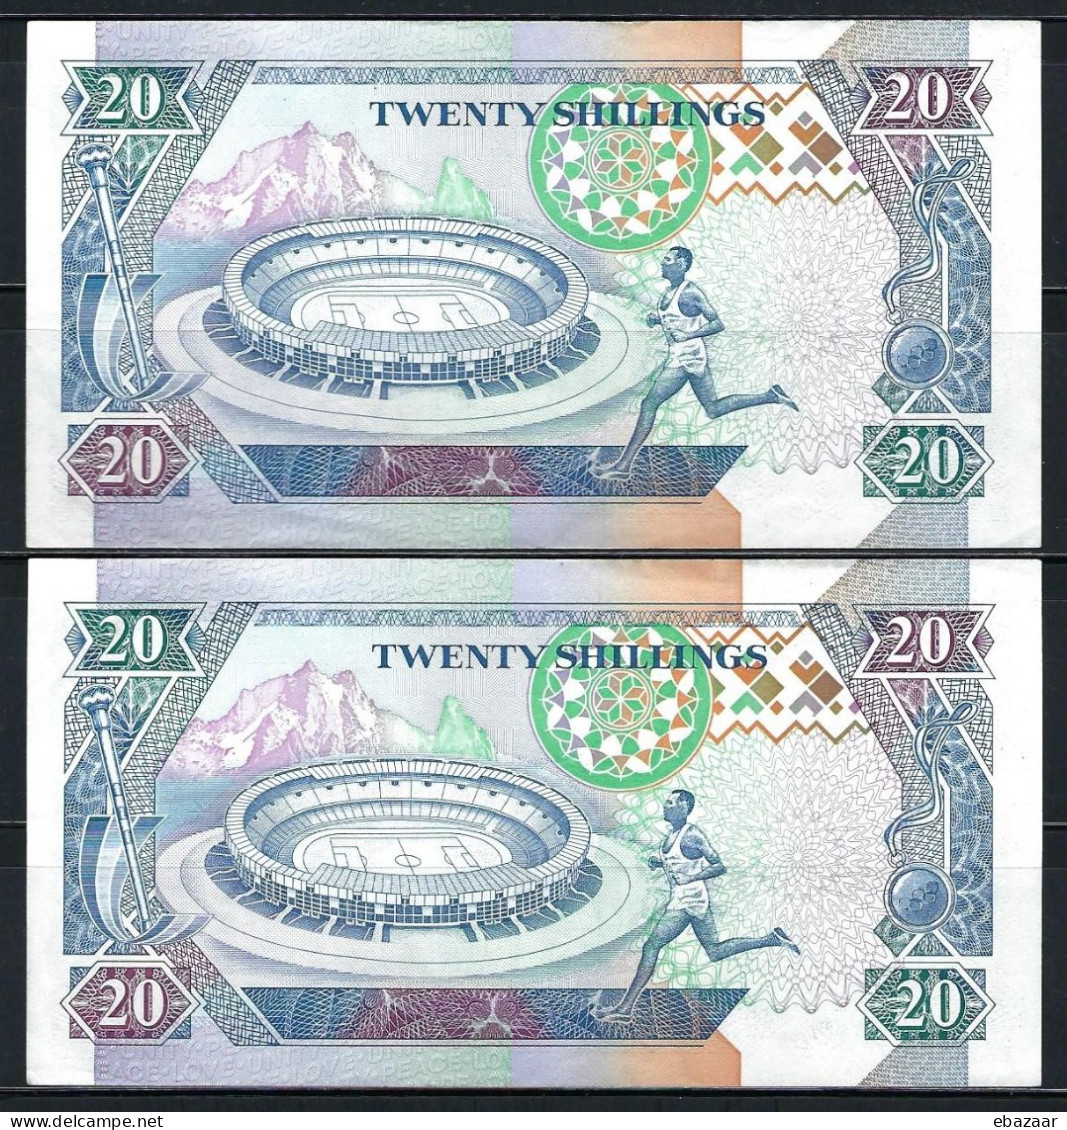 1993 Kenya 2 Consecutive Banknotes 20 Shillings P-31a AUNC-UNC - Kenya